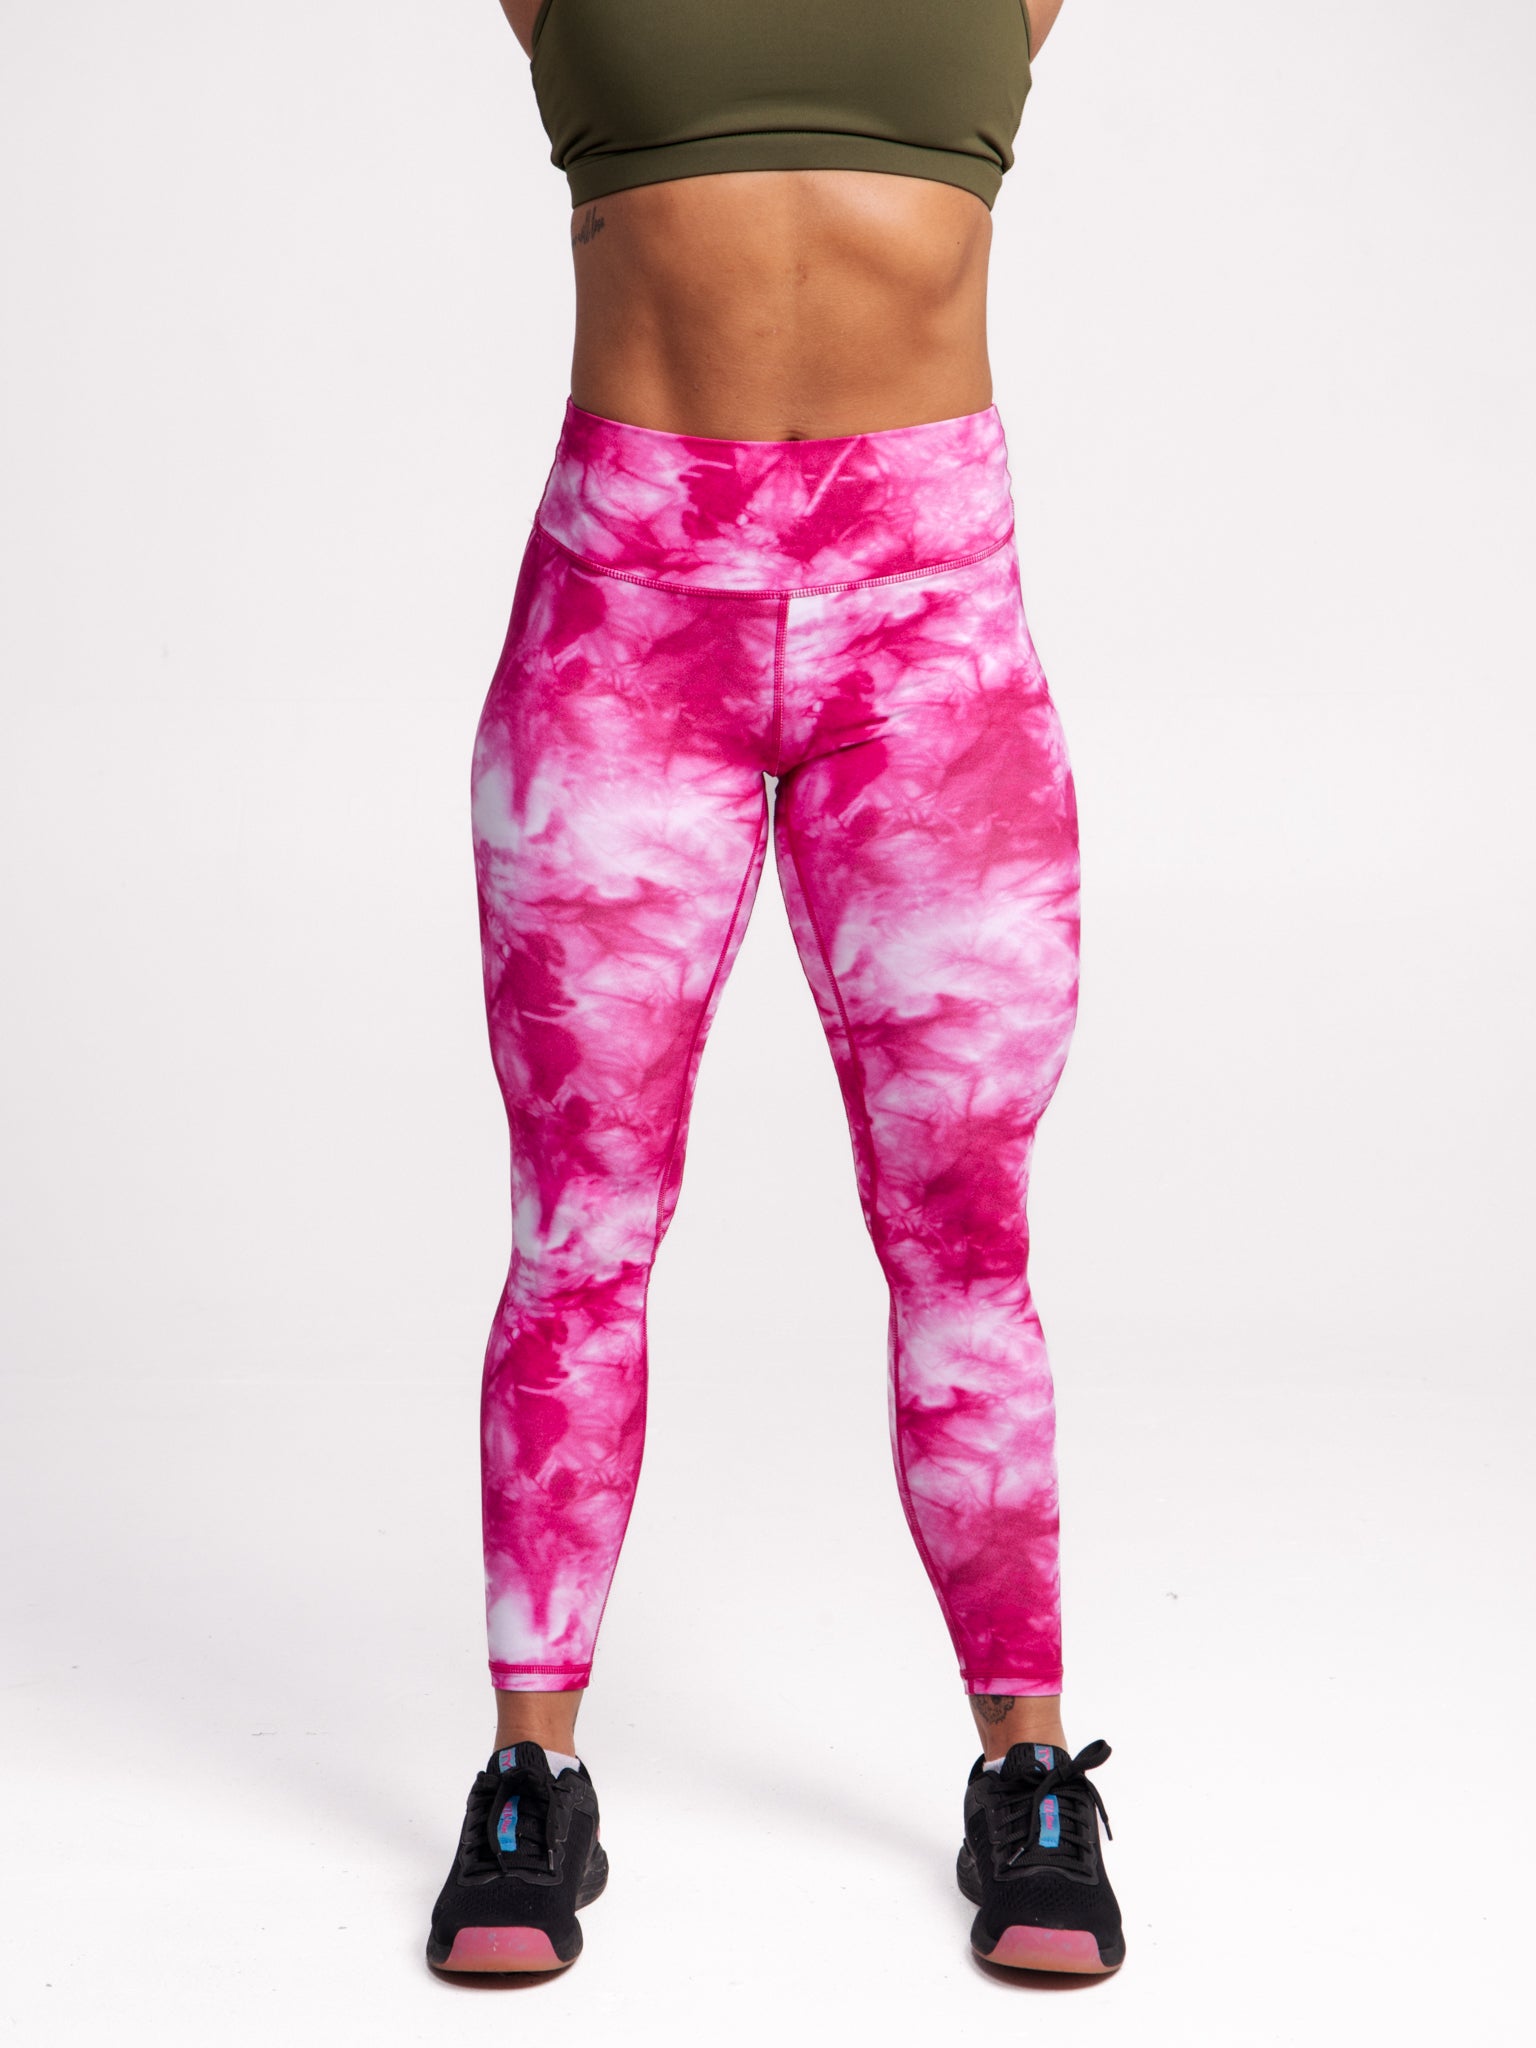 Womens Leggings Hot Pink Black Tie Dye Yoga Activewear Leggings Pants S or  L